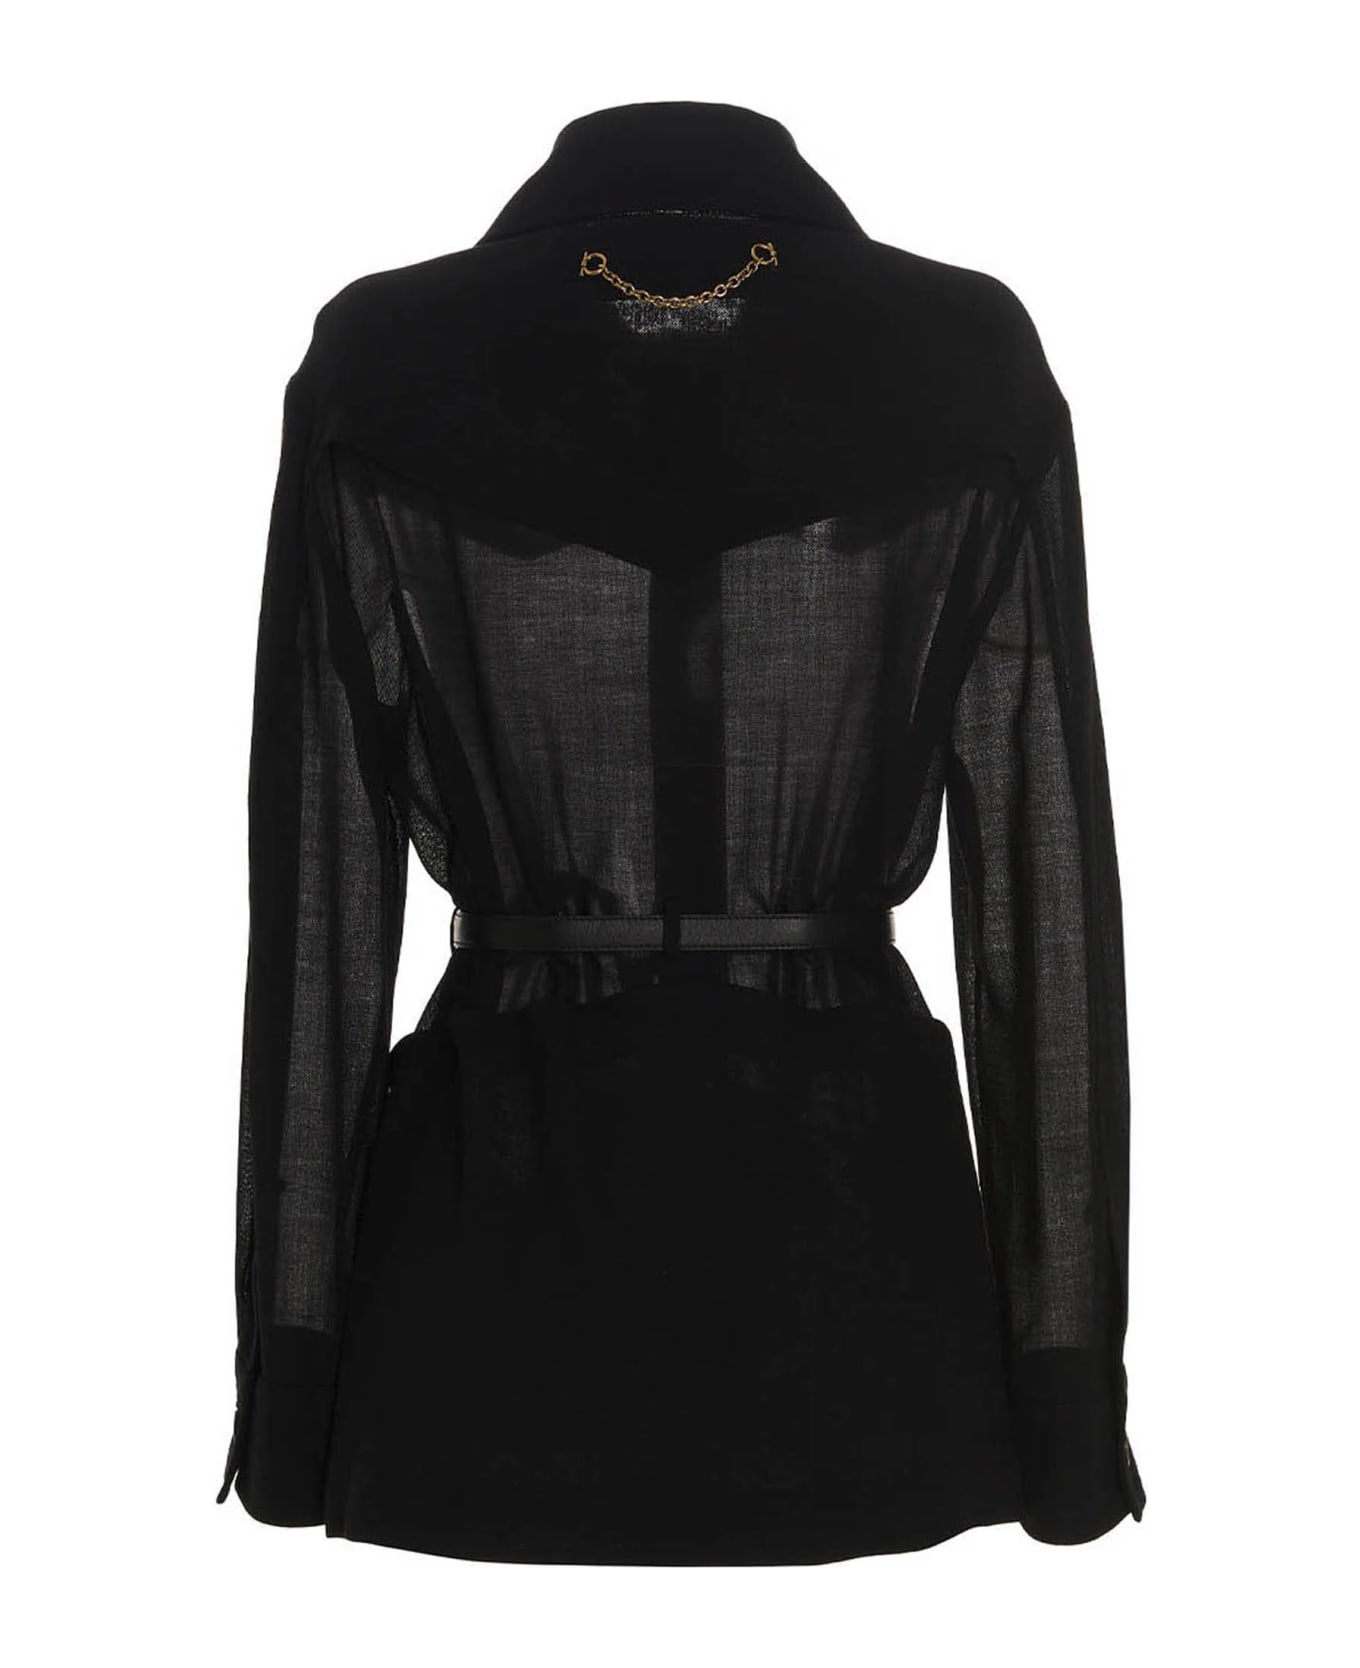 Ferragamo Wool Blend Jacket - Black   コート